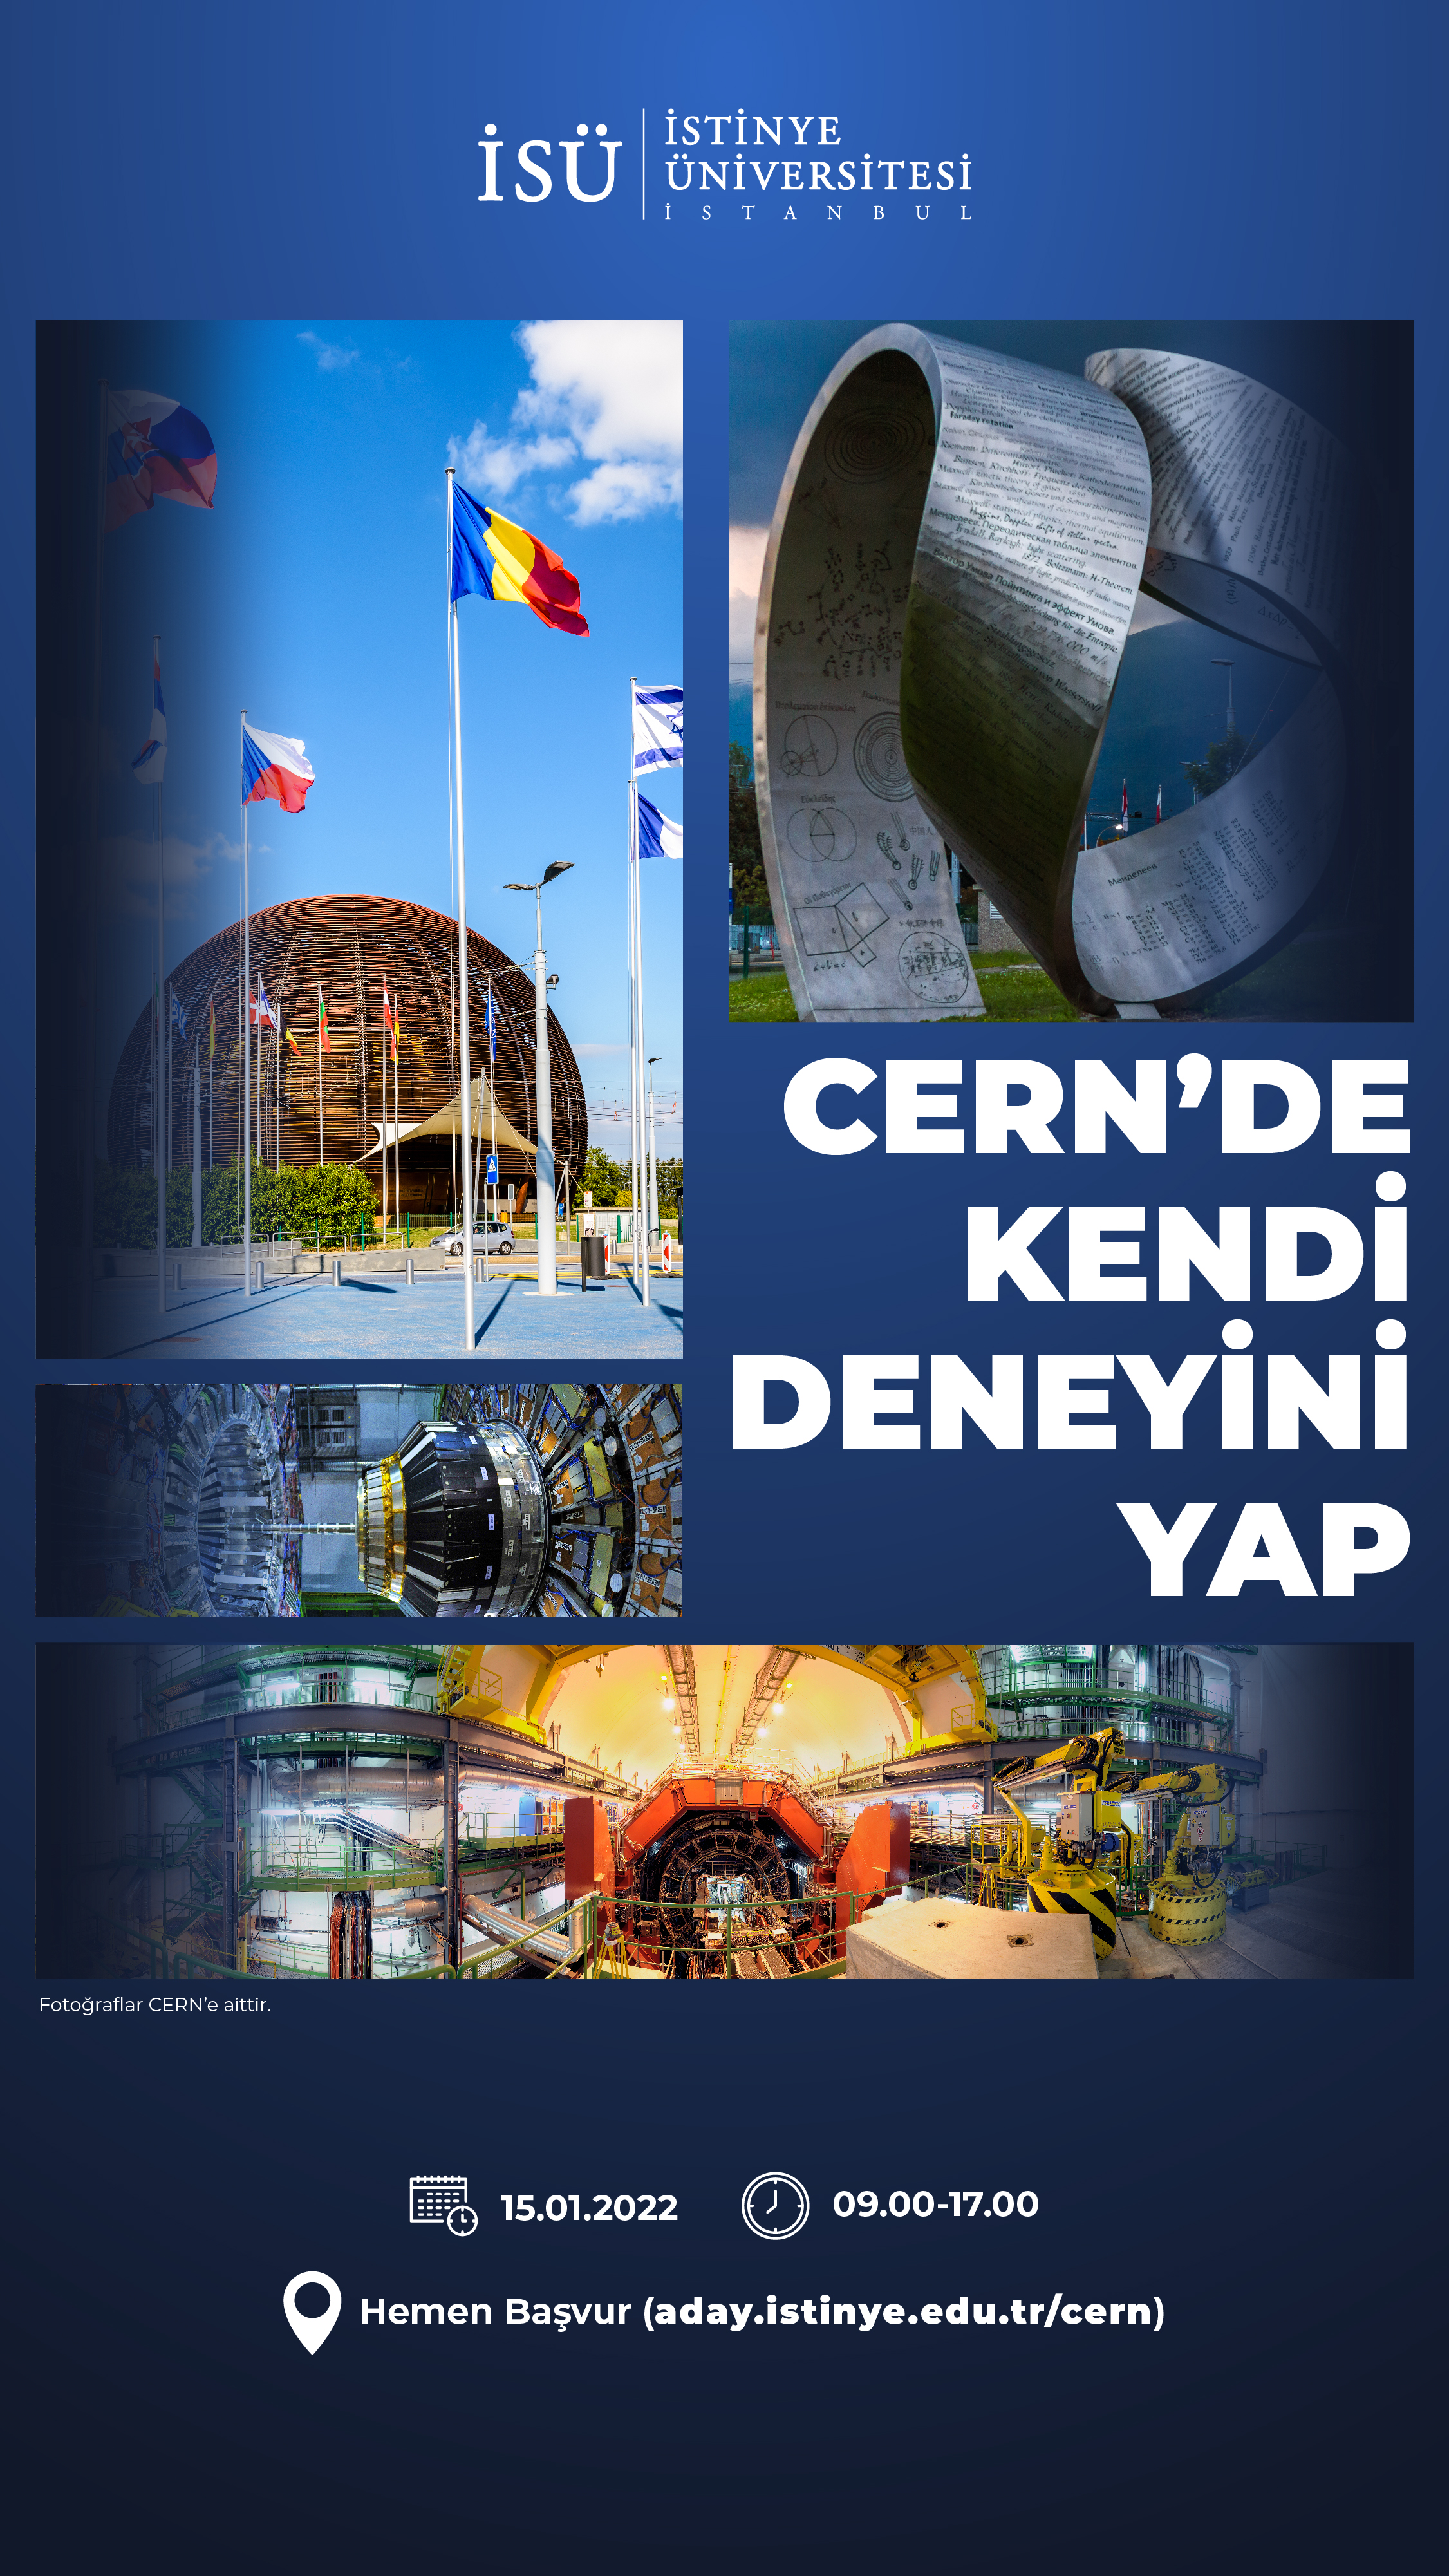  CERN'DE KENDİ DENEYİNİ YAP